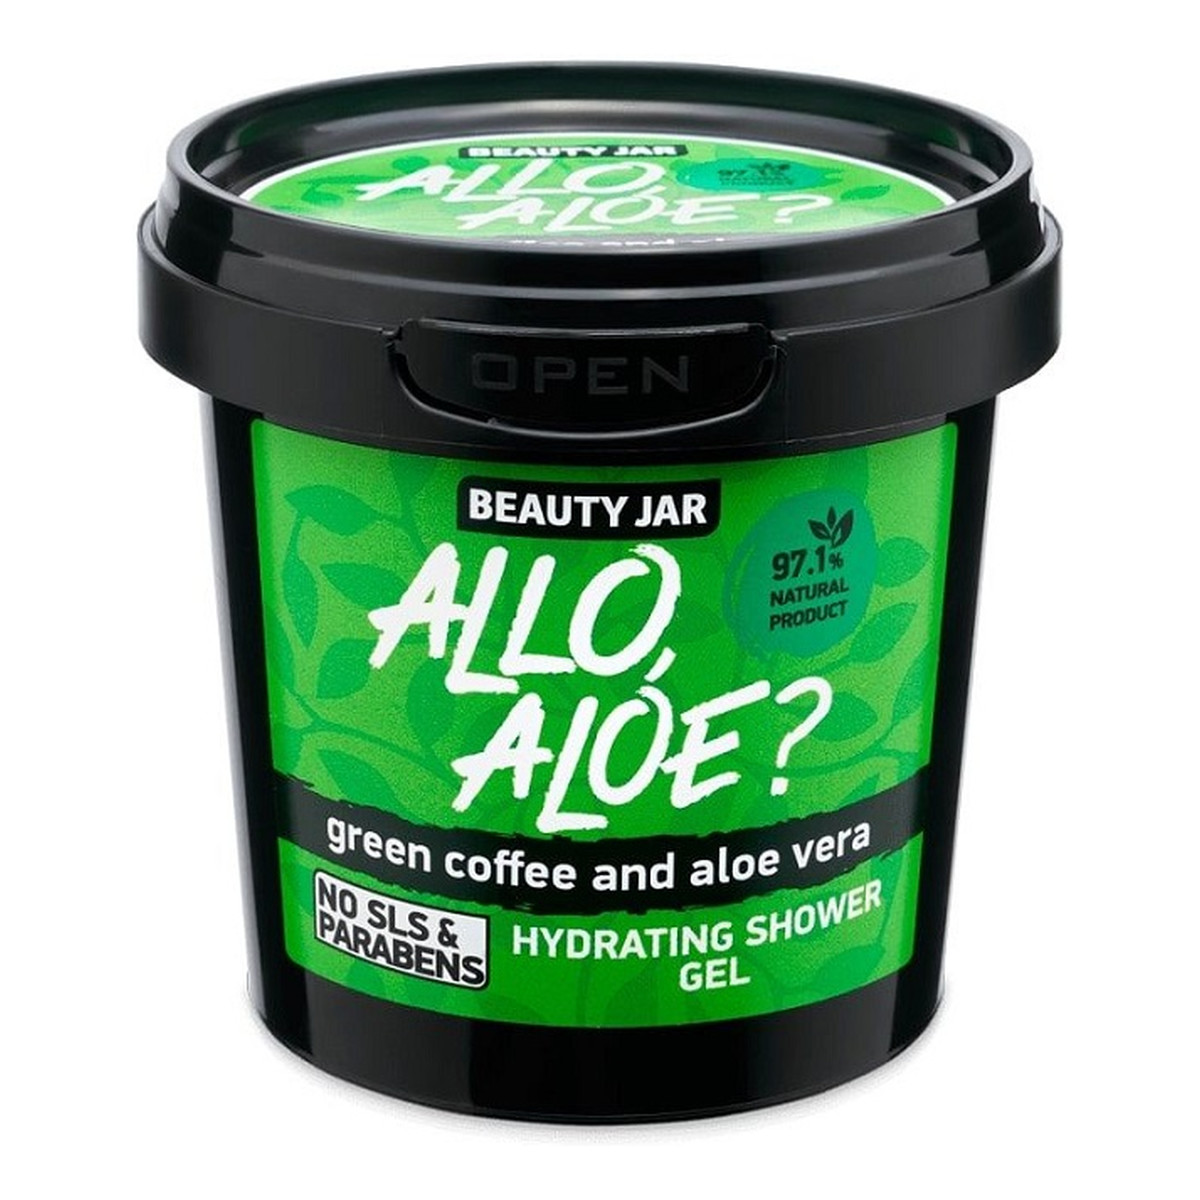 Beauty Jar Allo Aloe? nawilżający Żel pod prysznic z zieloną kawą i aloesem 150g